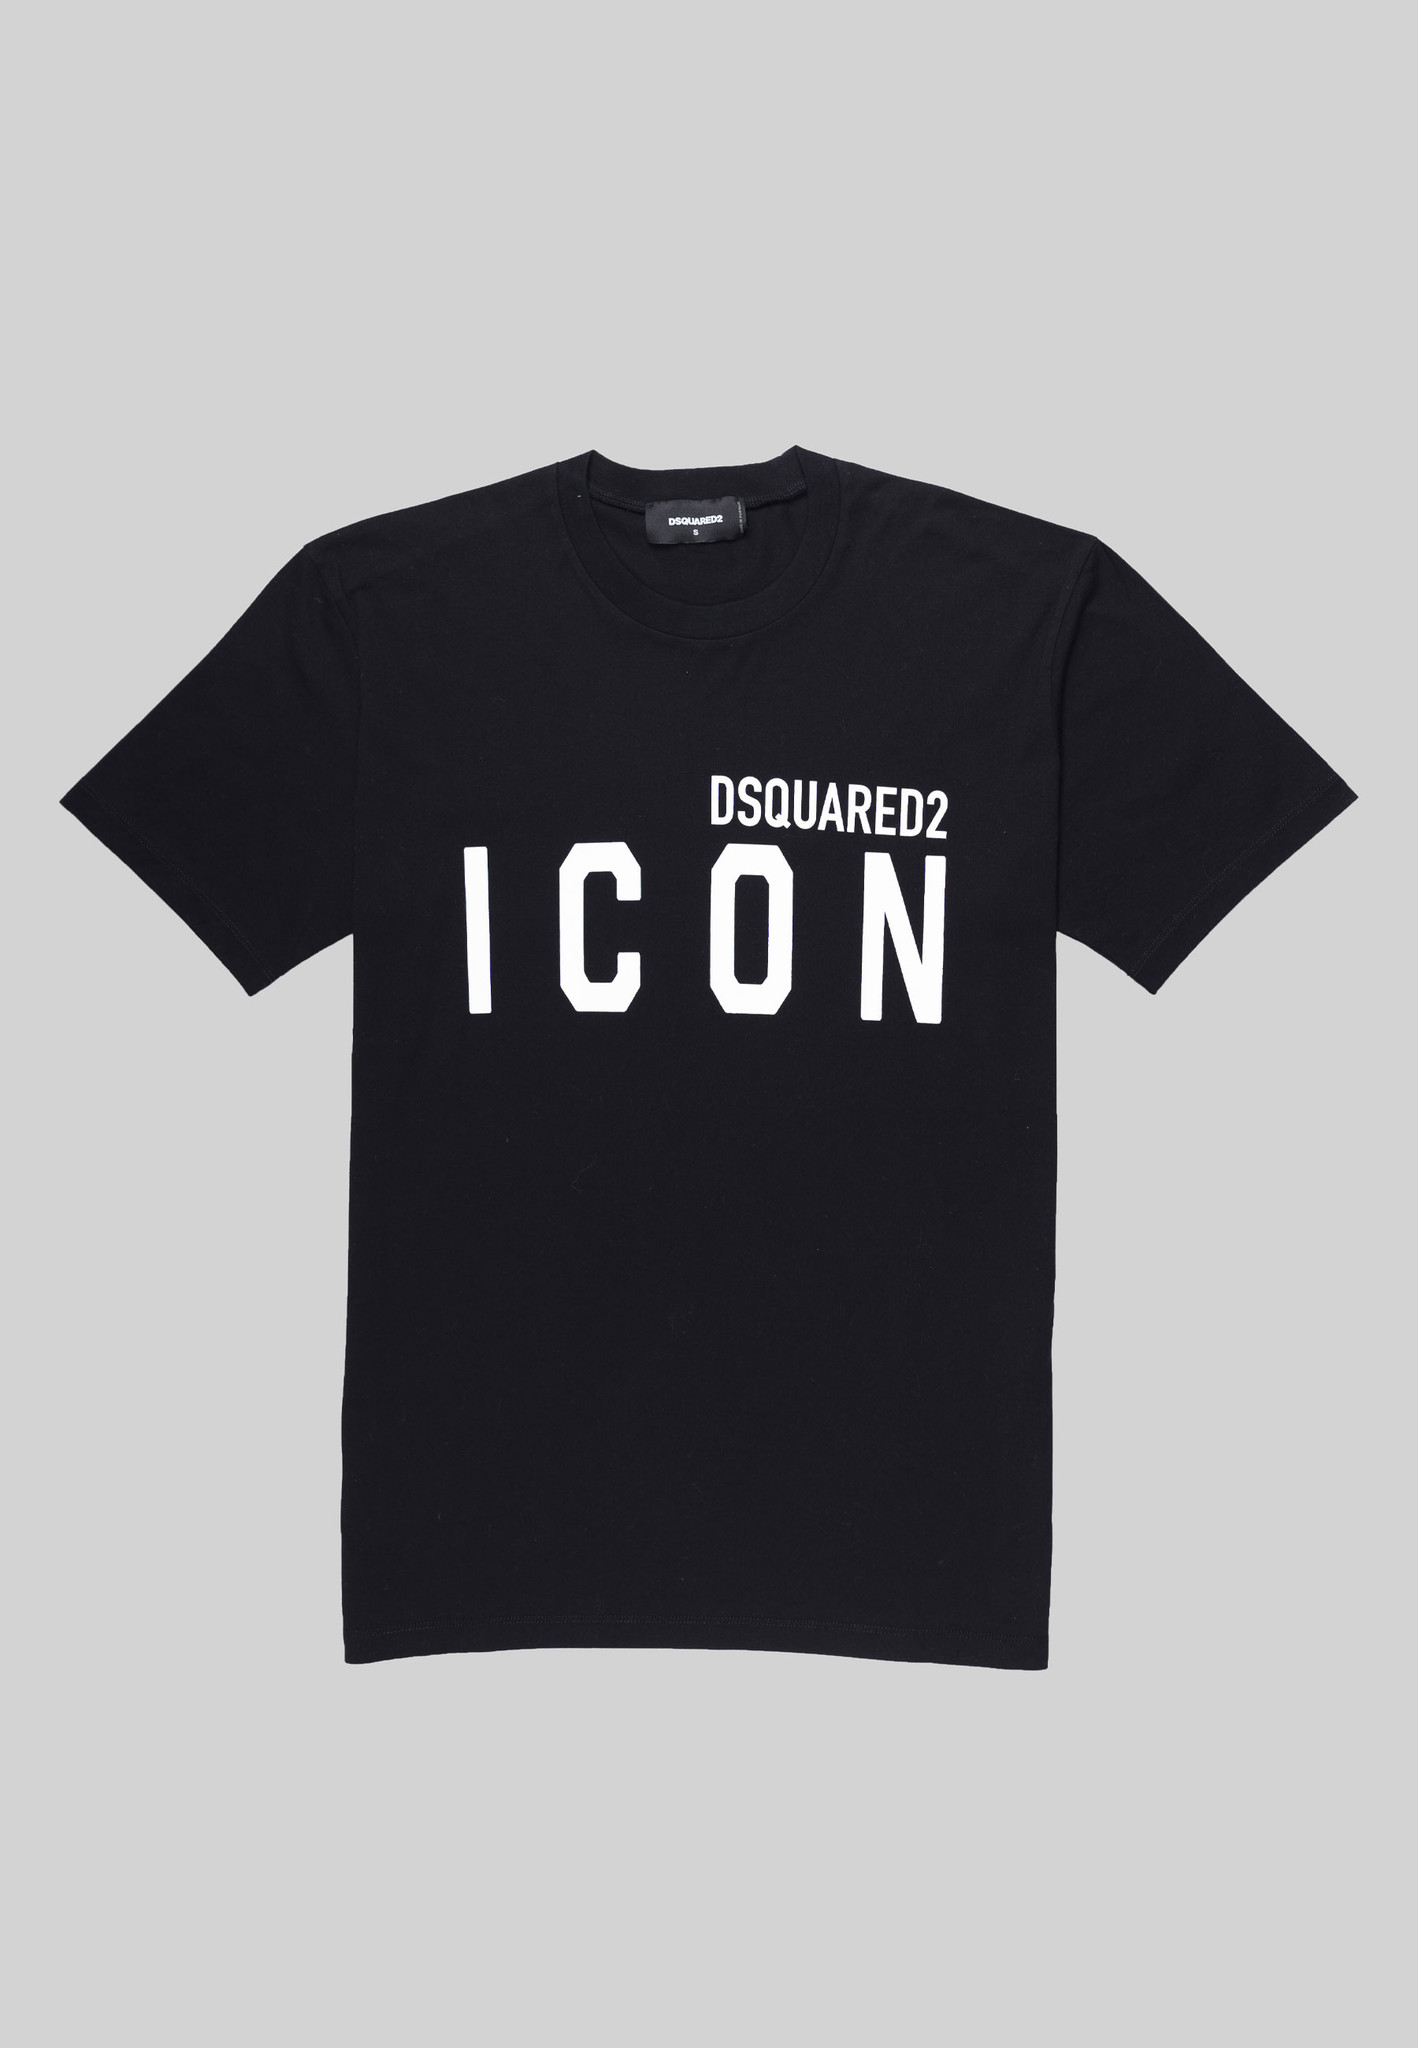 Verwaand Verlichten satelliet Dsquared2 T-Shirt Icon Black - Bestel nu online. - MrFash.com